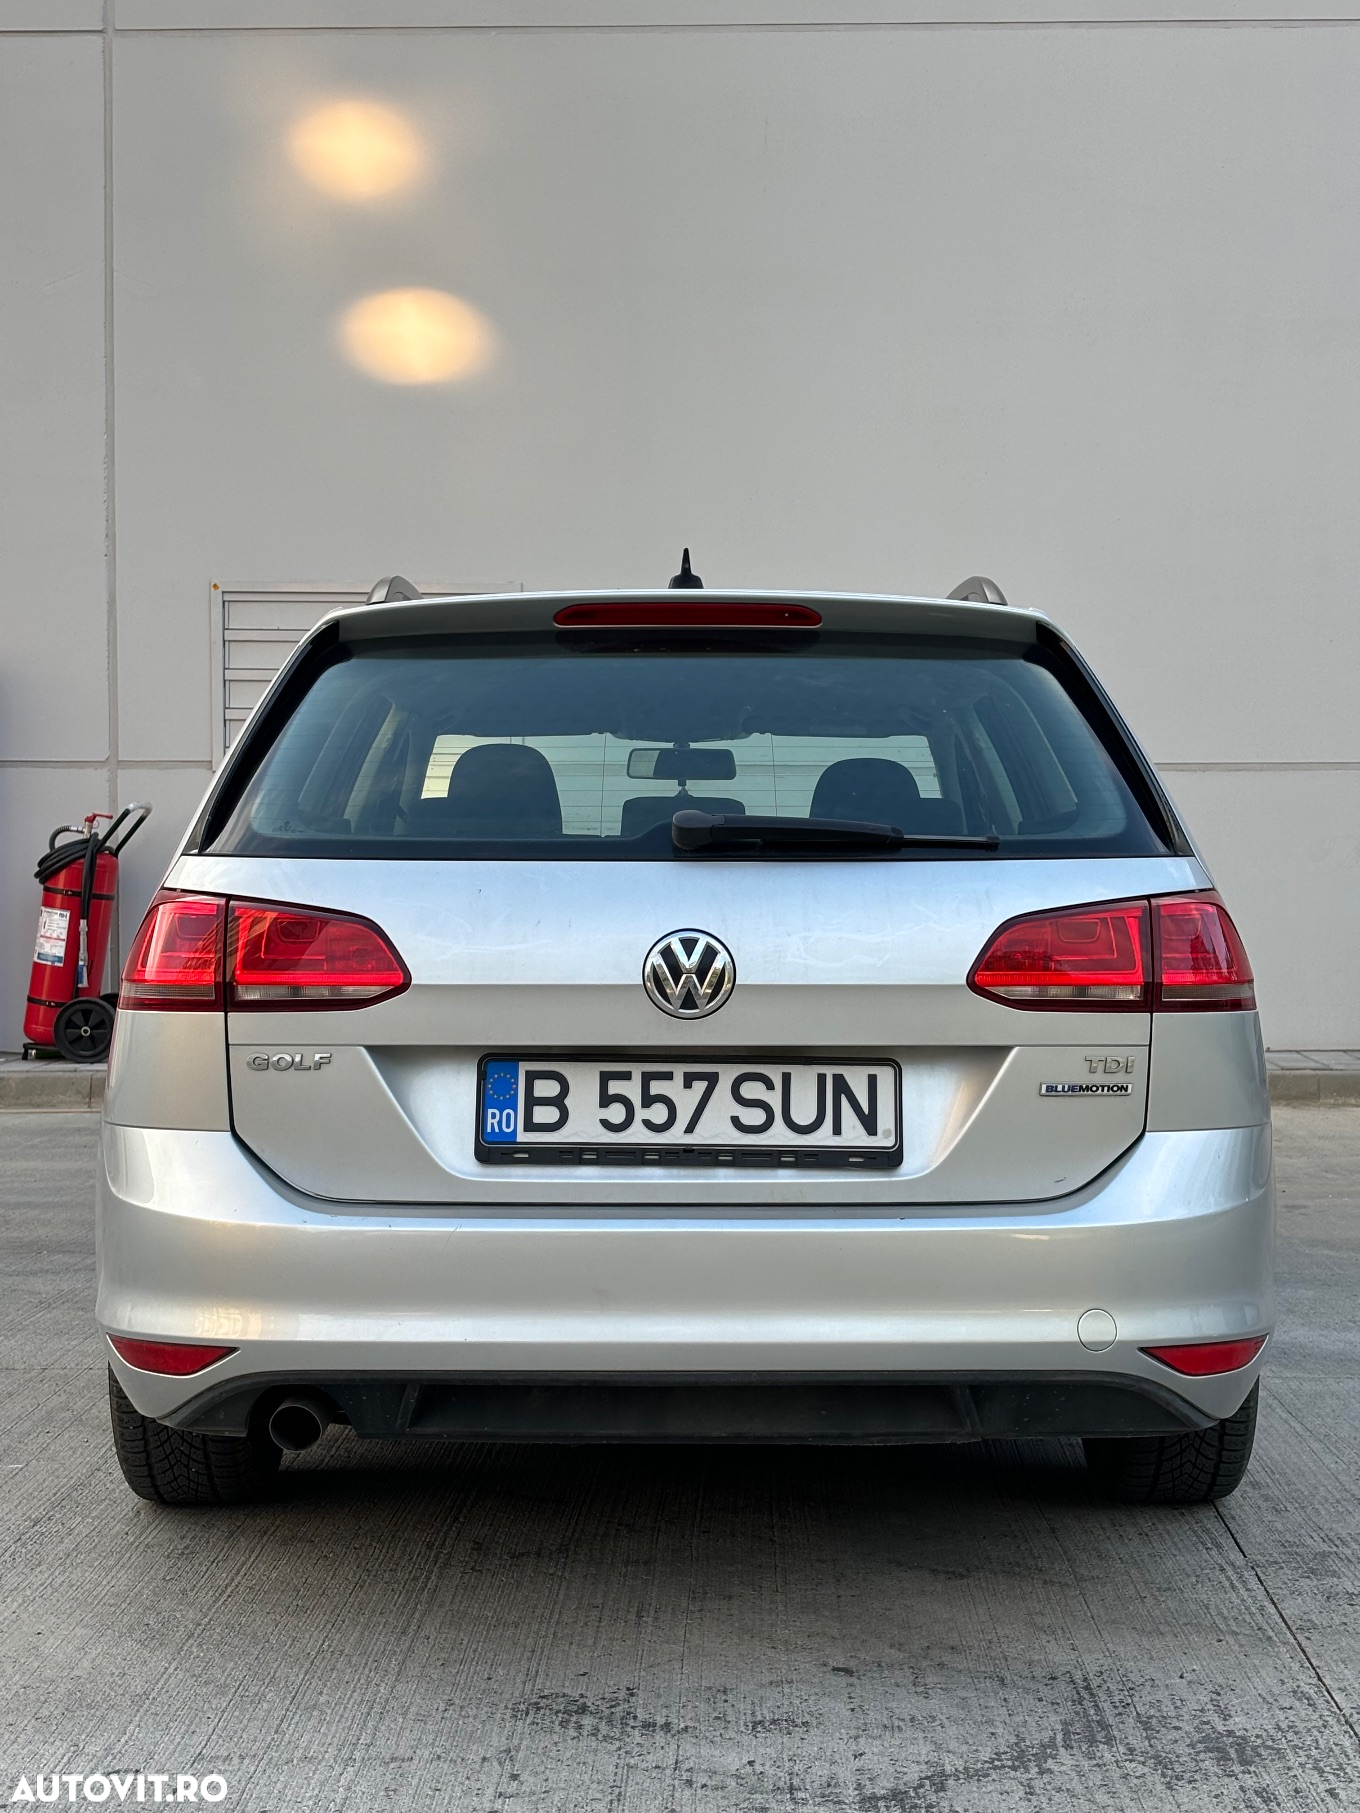 Volkswagen Golf 1.6 TDI BlueMotion Trendline - 2